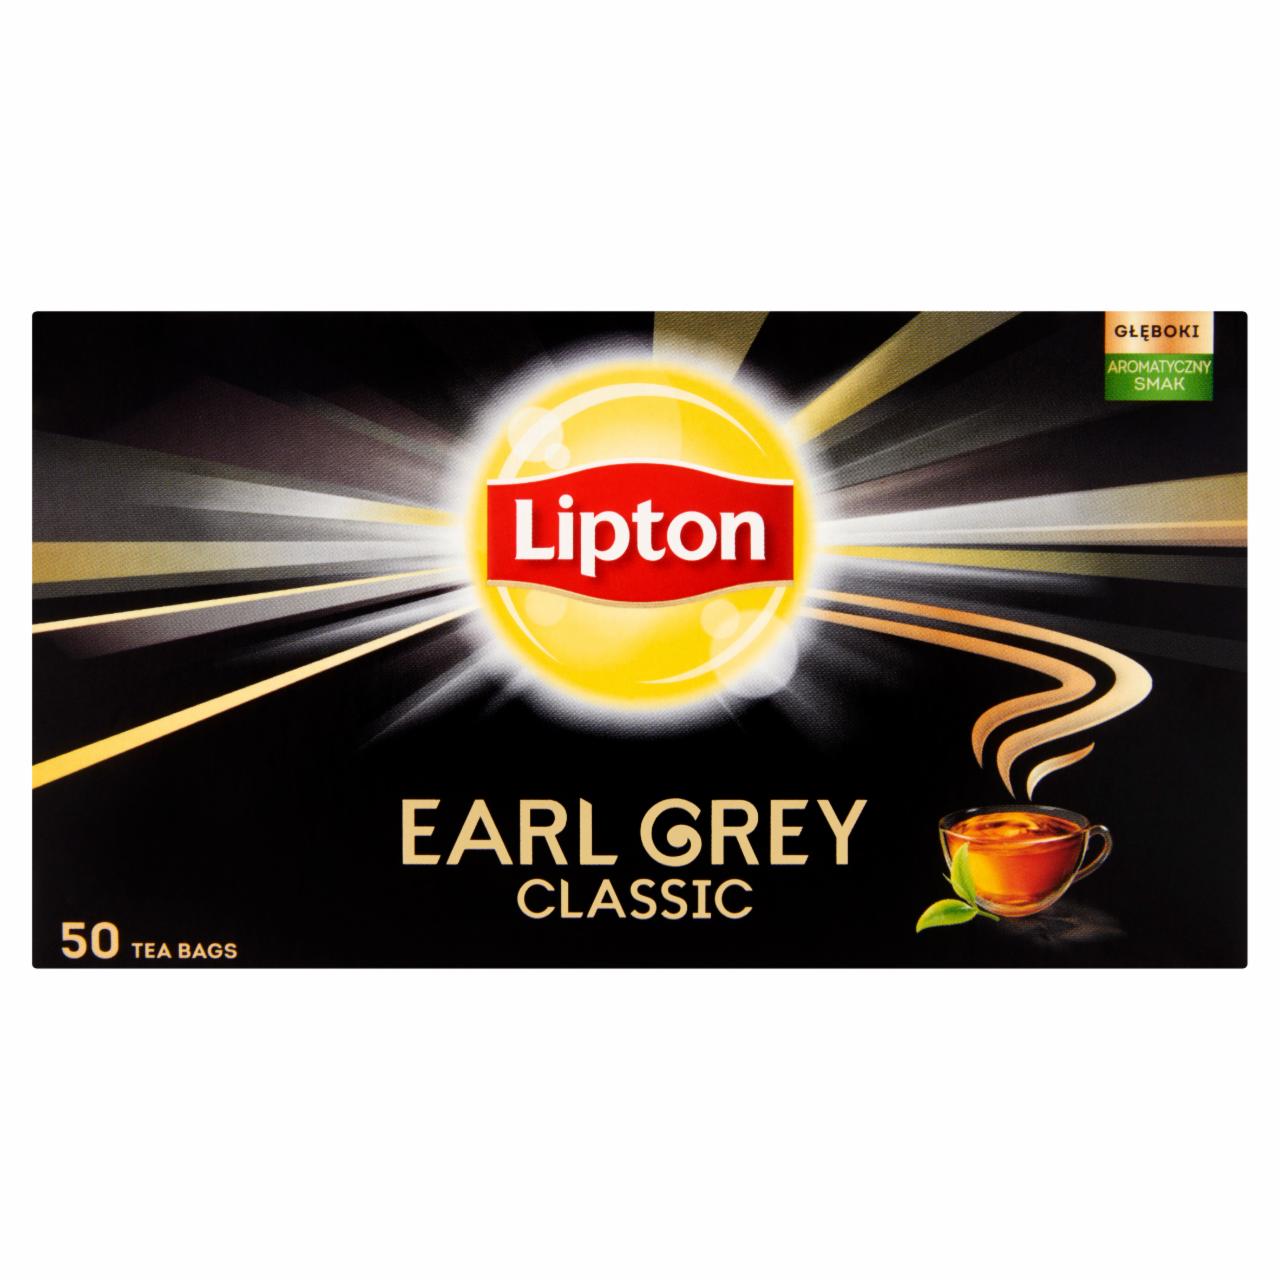 Képek - Lipton Earl Grey Classic bergamot ízesítésű fekete tea 50 filter 75 g